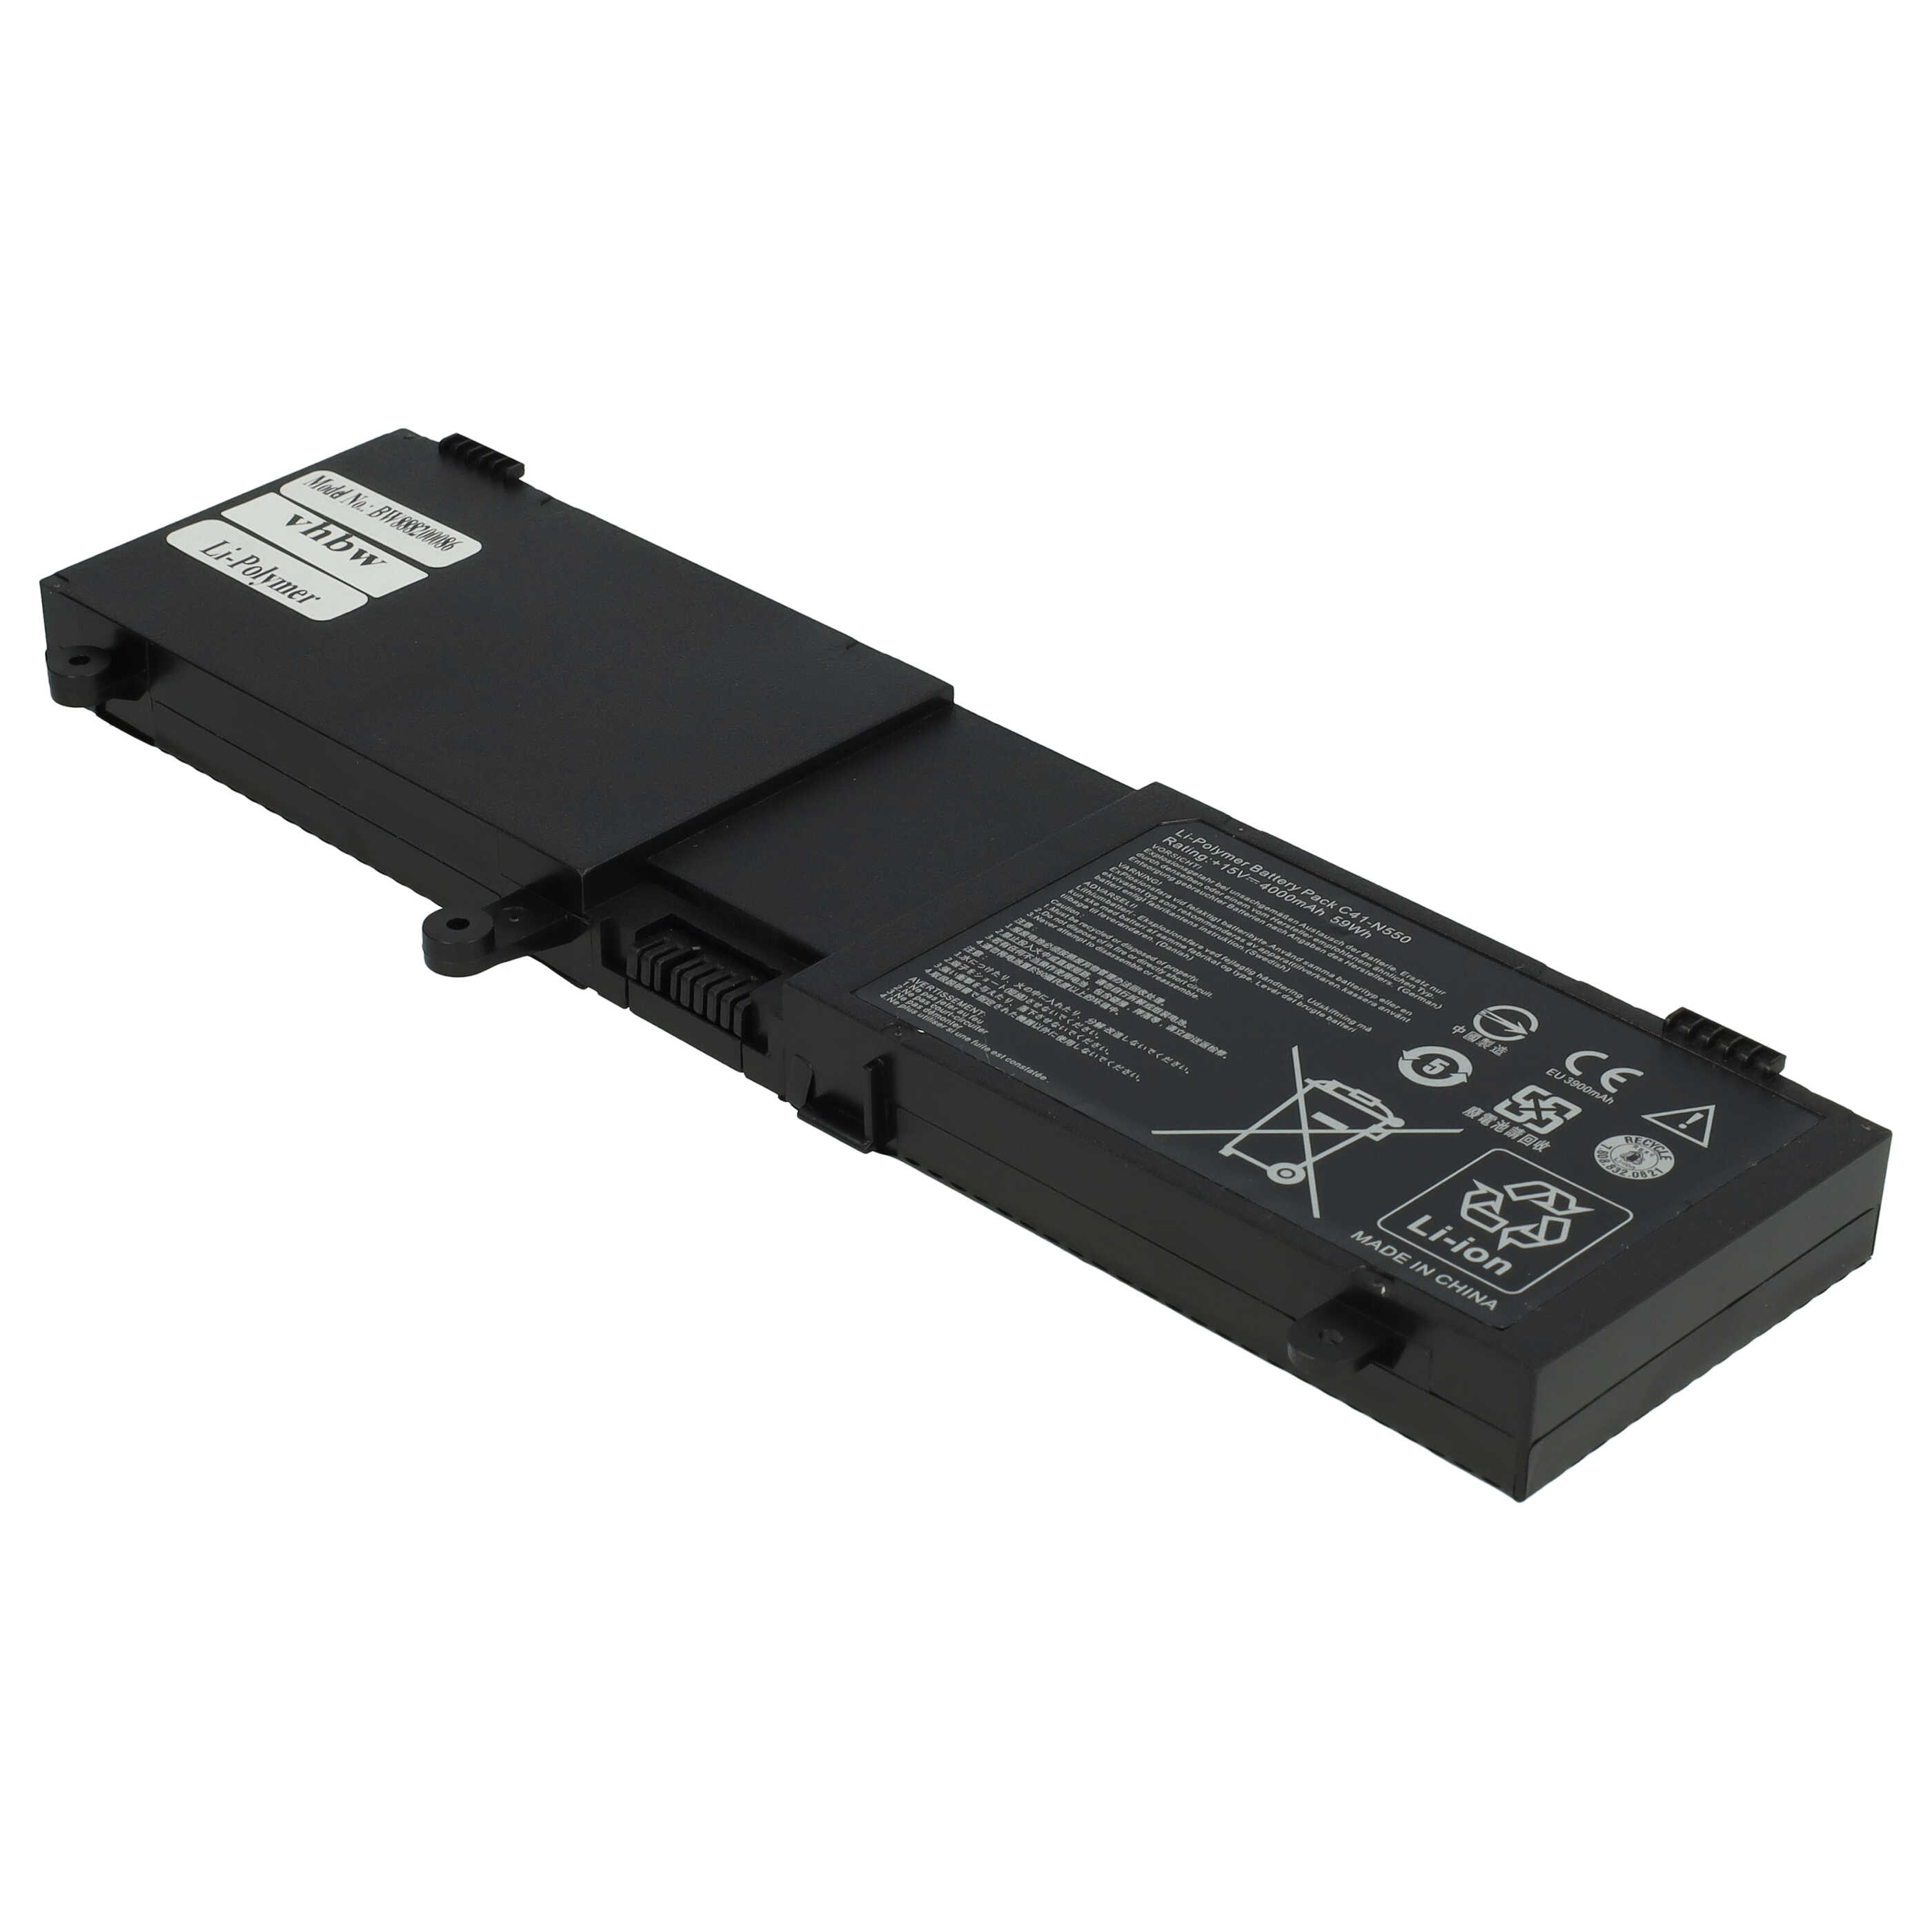 Batterie remplace Asus 0B200-00390000, 0B200-00390100 pour ordinateur portable - 4000mAh 15V Li-polymère, noir